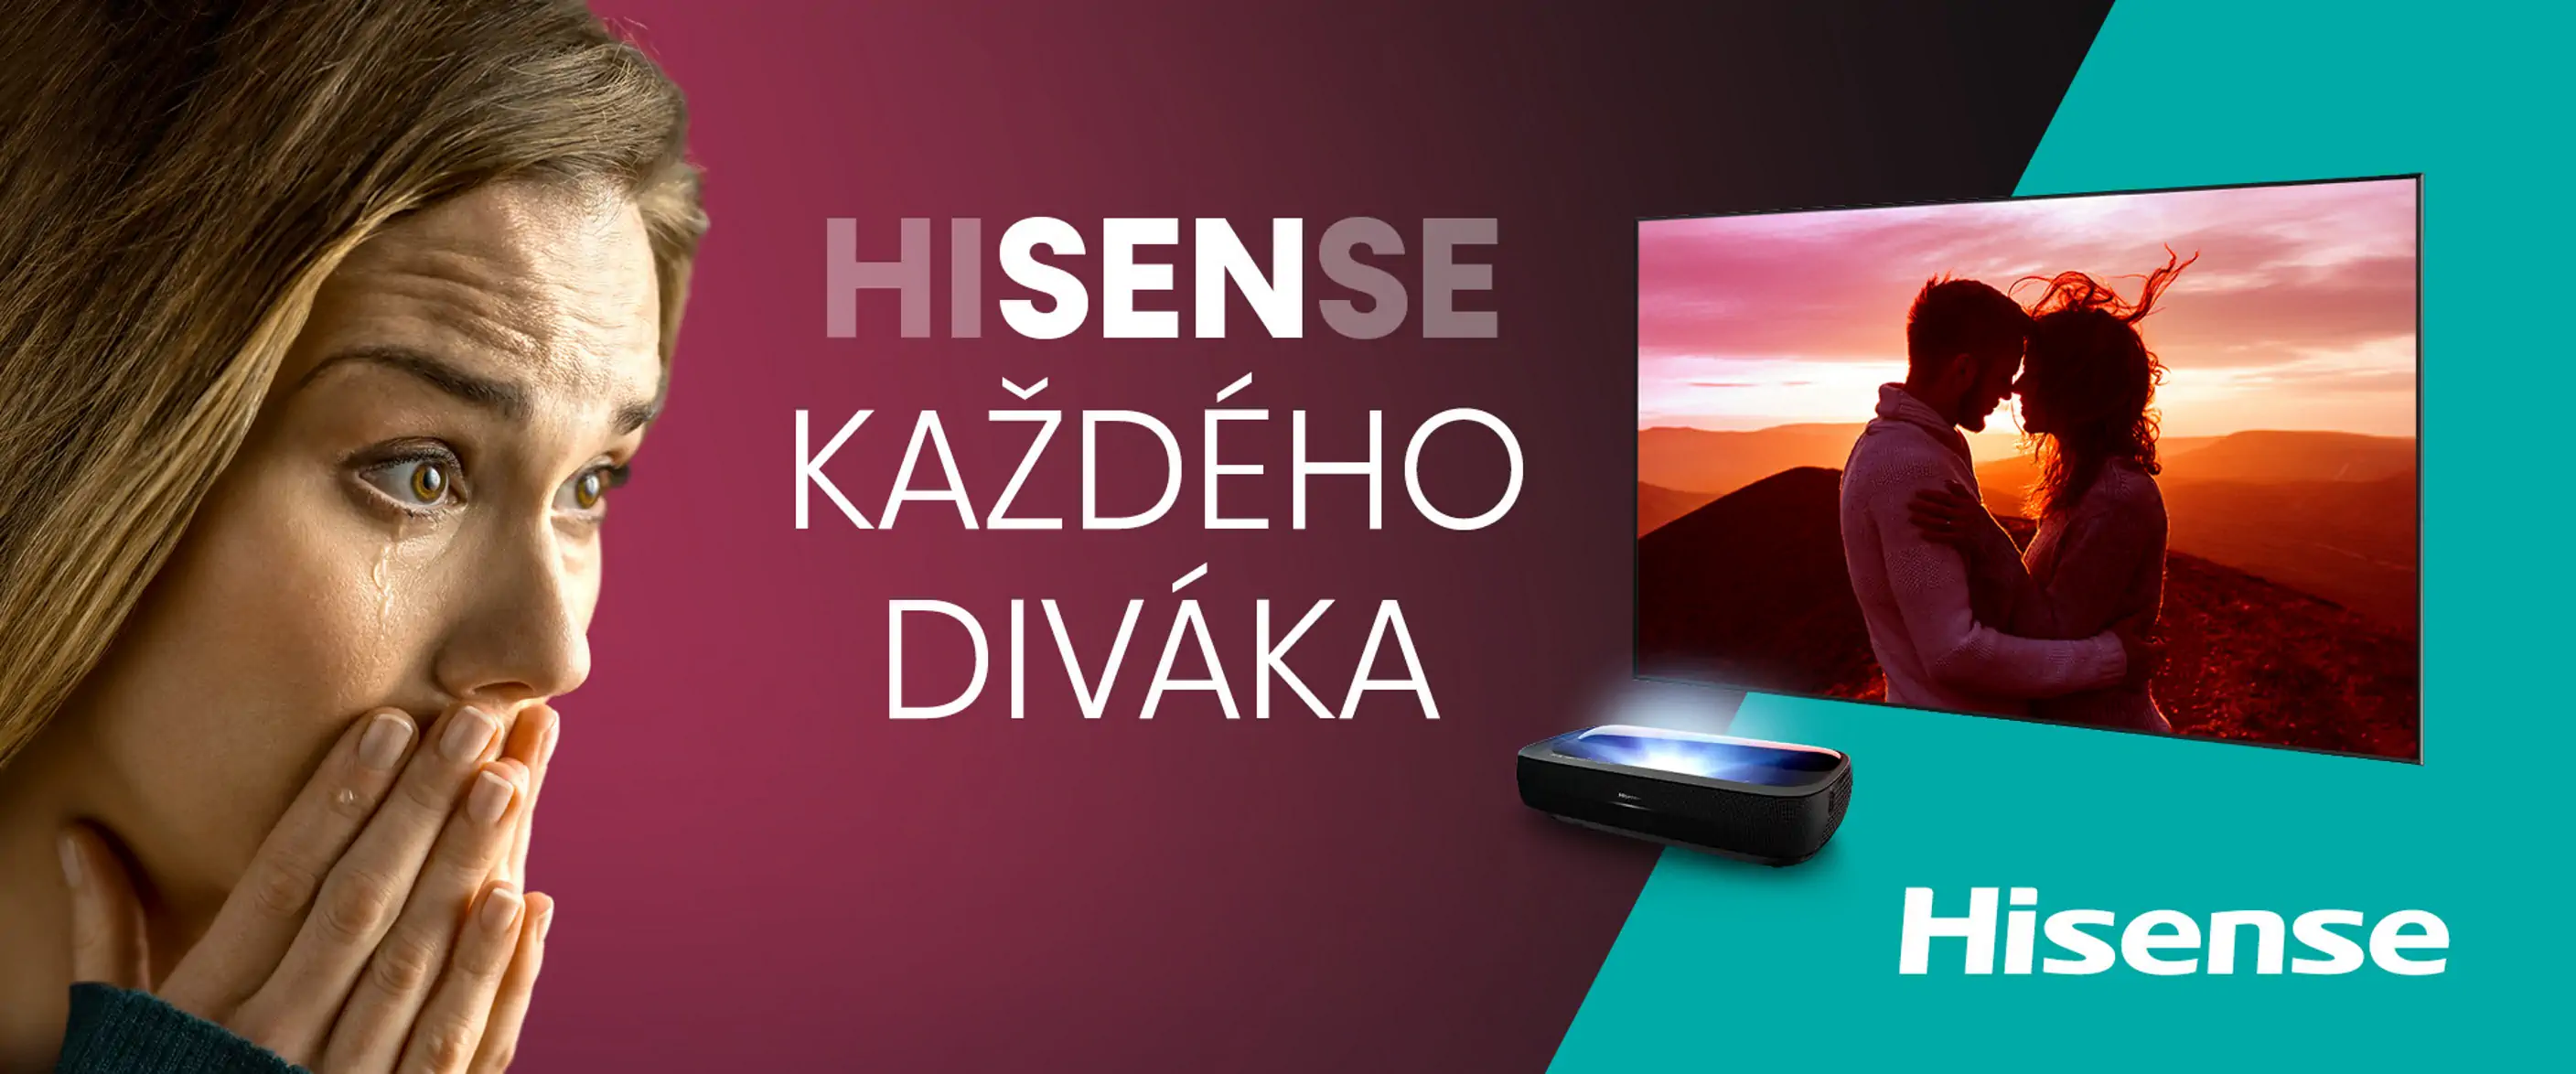 hisense-sen-kazdeho-divaka-lp-tablet-cz-2816.webp